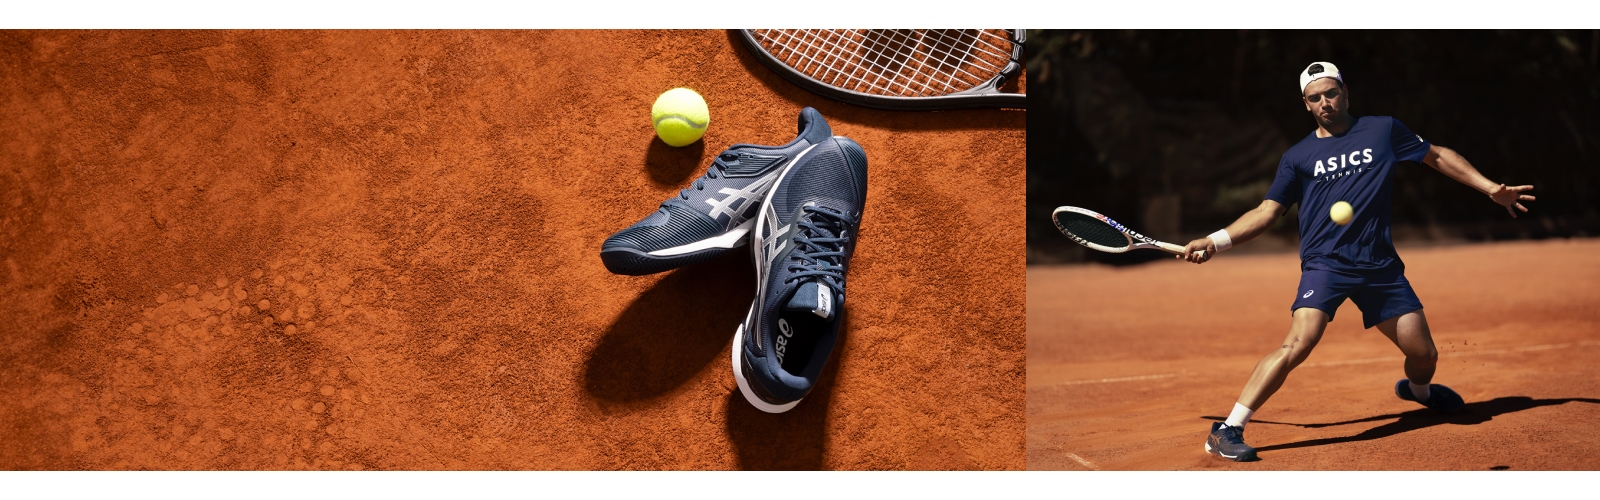 ASICS Tennis Equipment & Gear